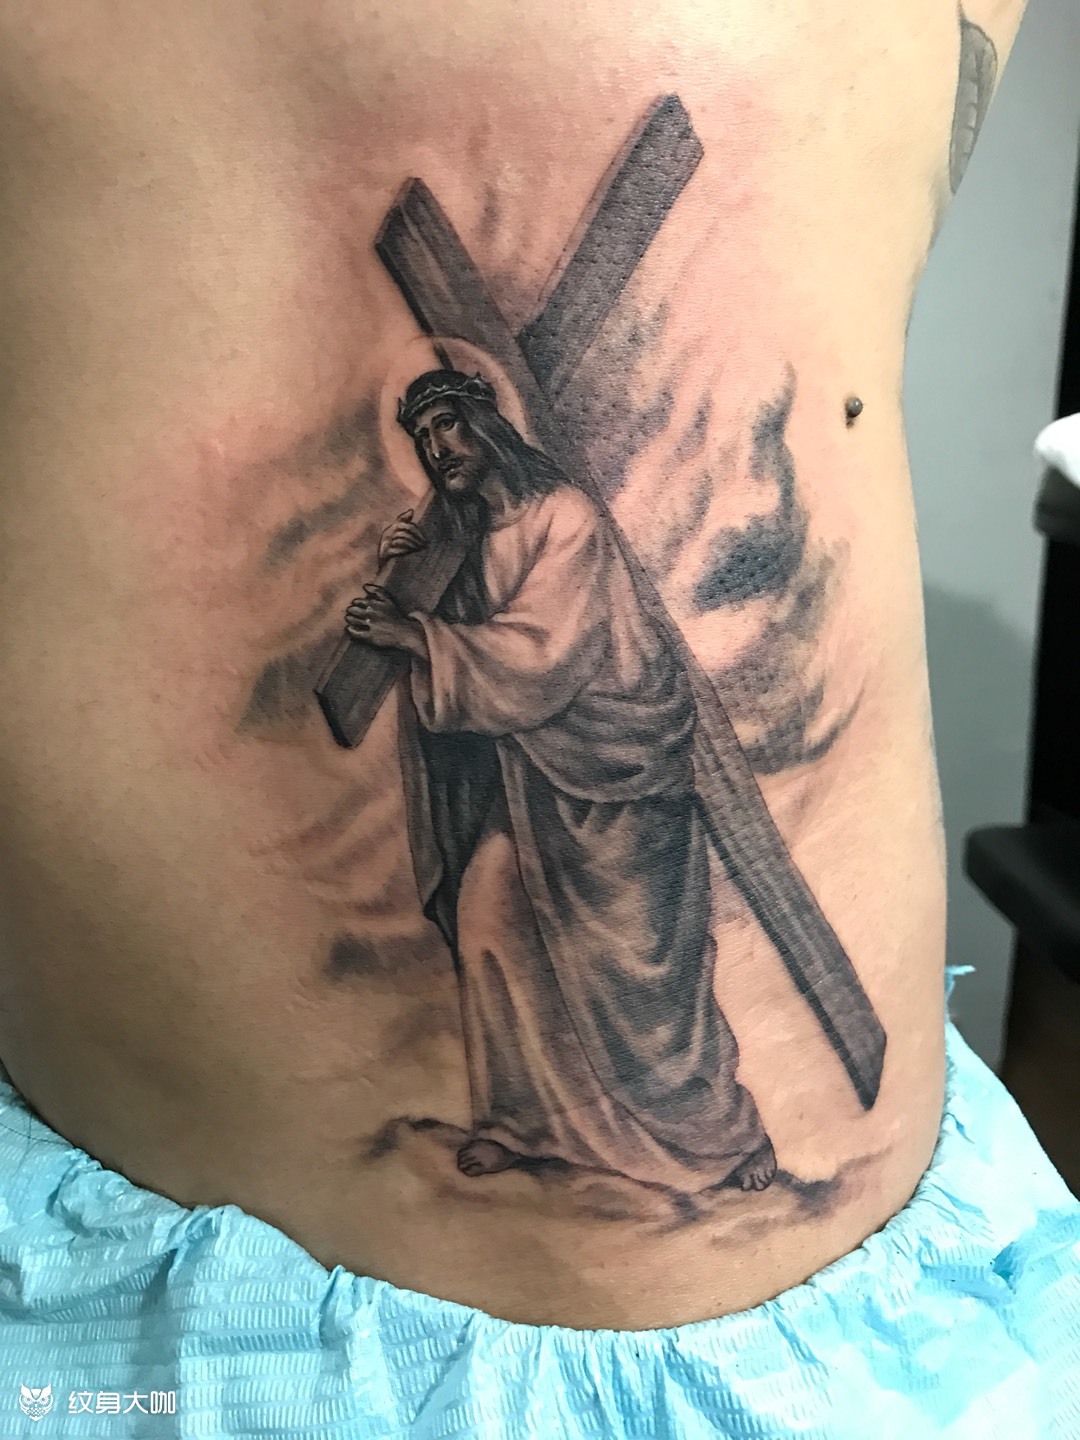 耶稣纹身手稿手臂图片